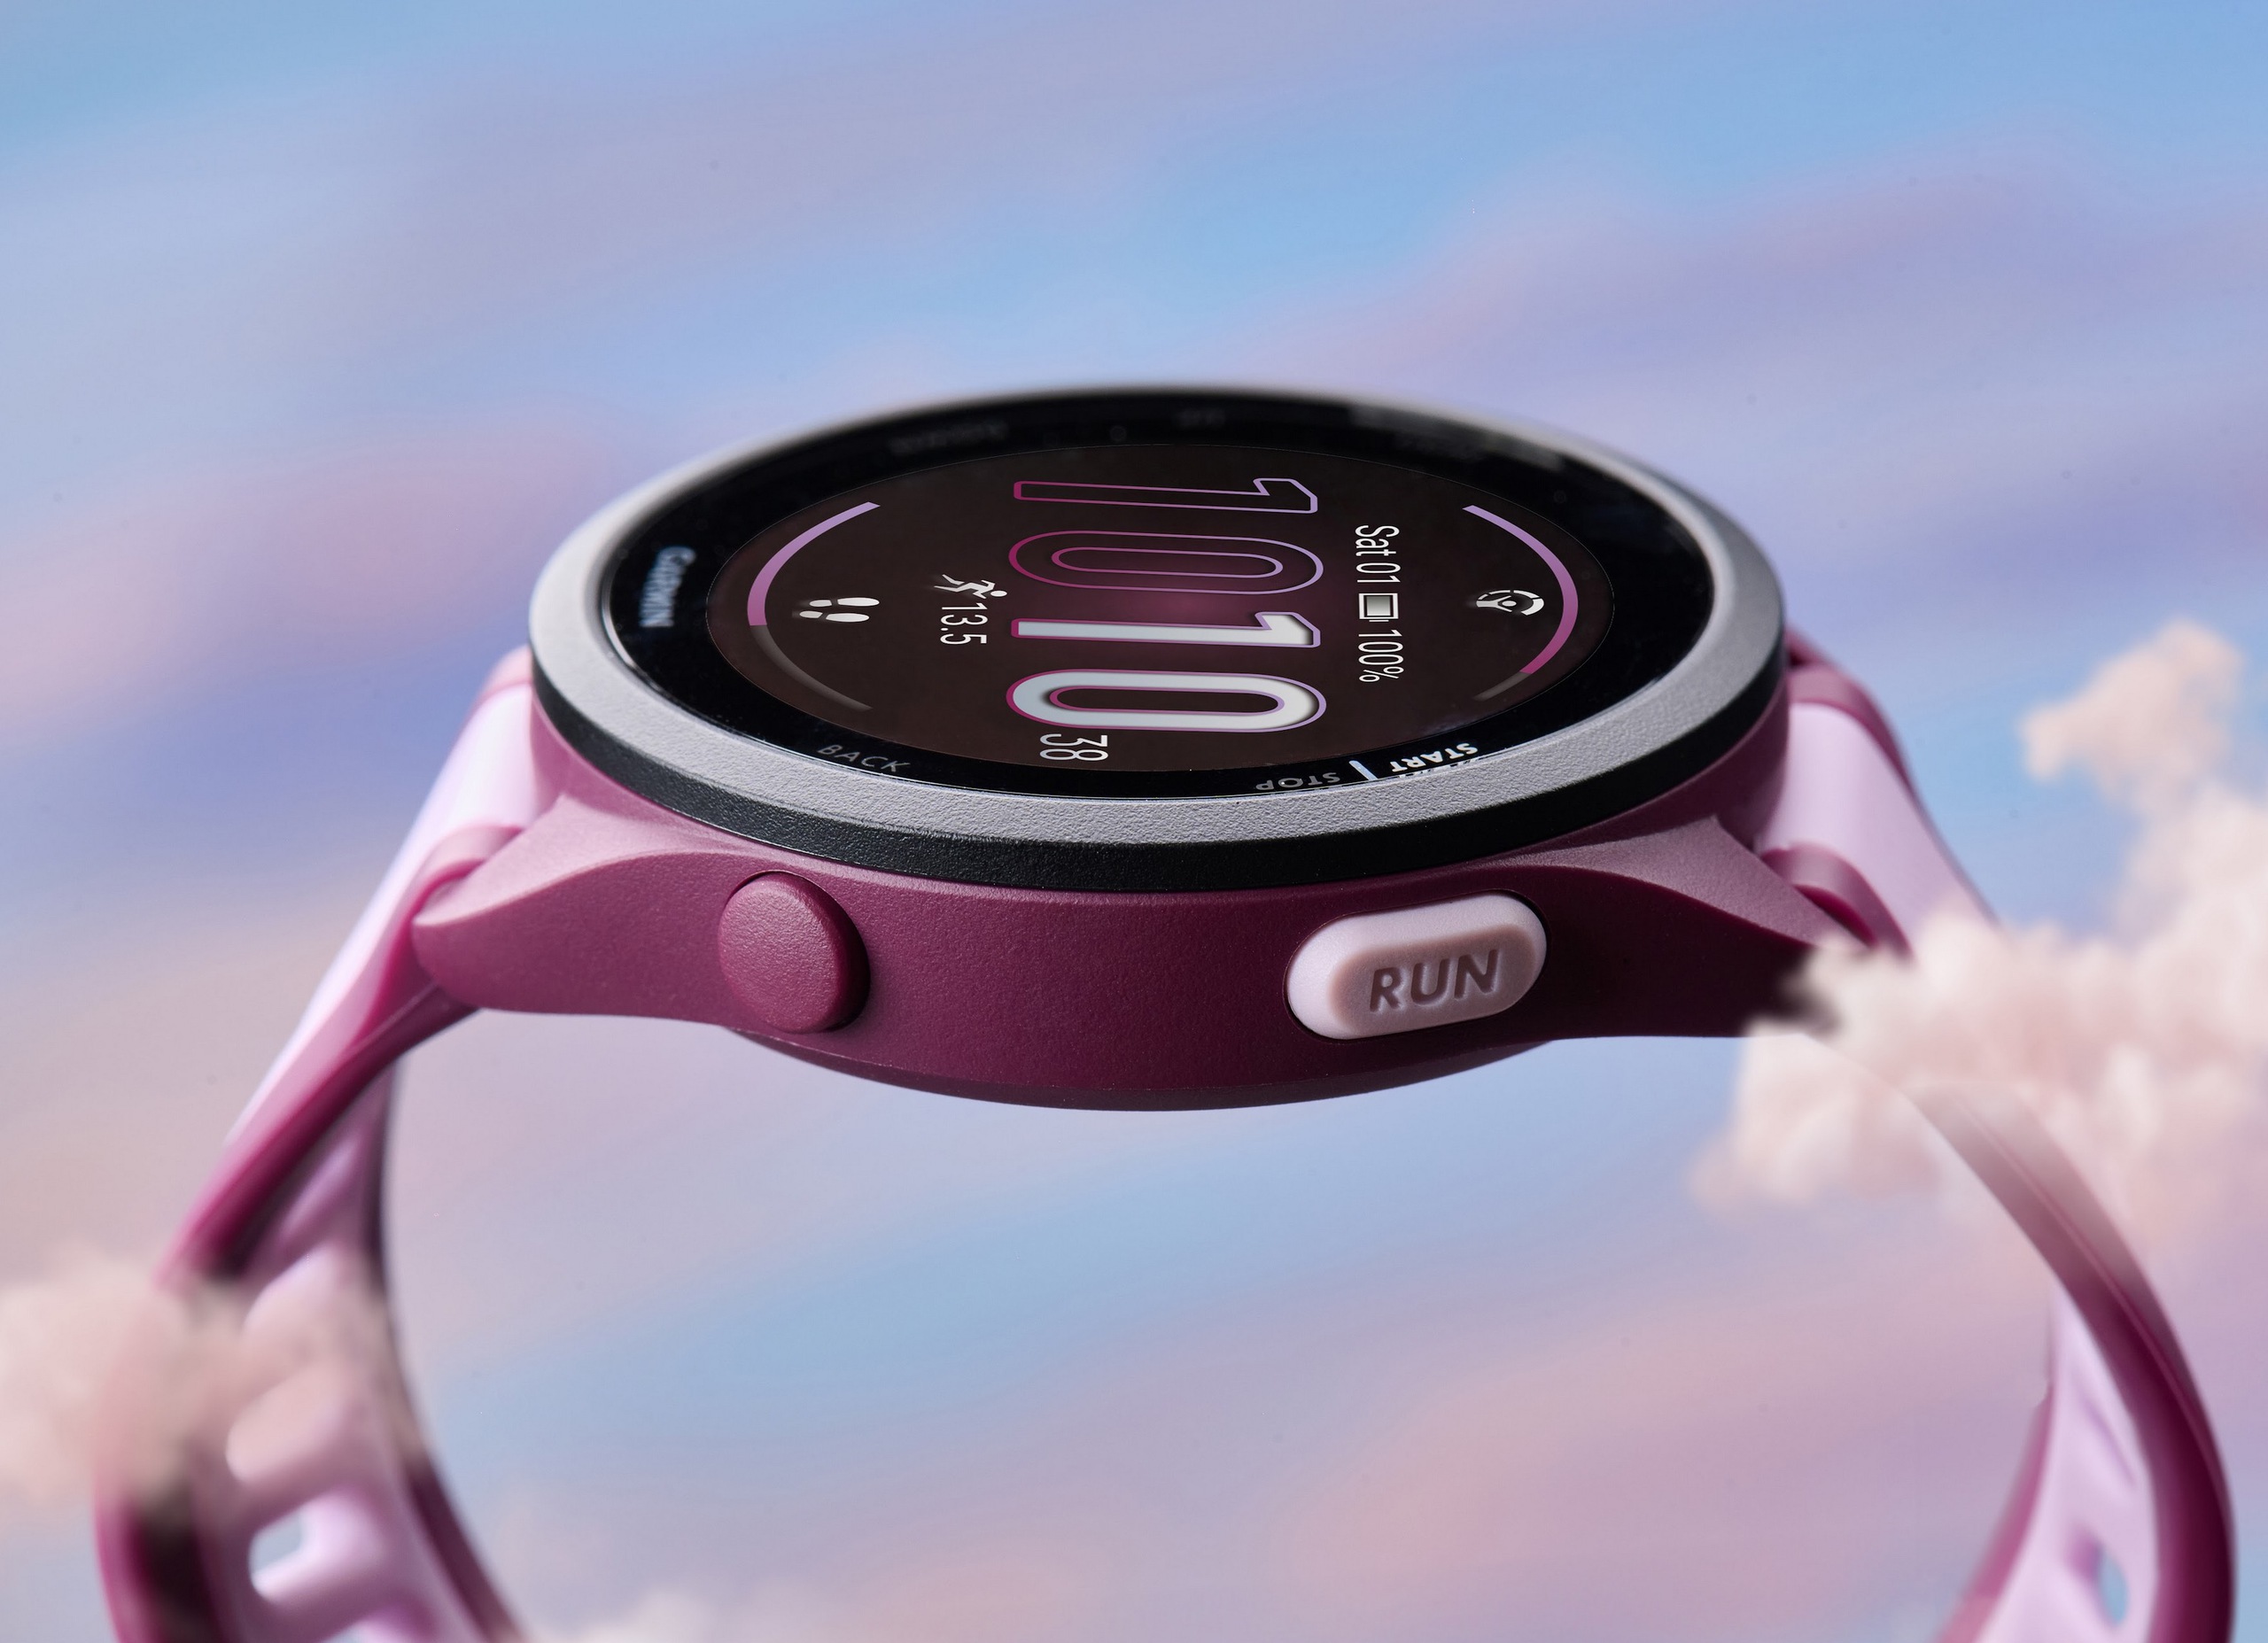 Garmin công bố giải chạy Longbien Garmin Run kèm bộ đôi đồng hồ Forerunner 165 Series và cảm biến nhịp tim HRM-Fit mới- Ảnh 5.